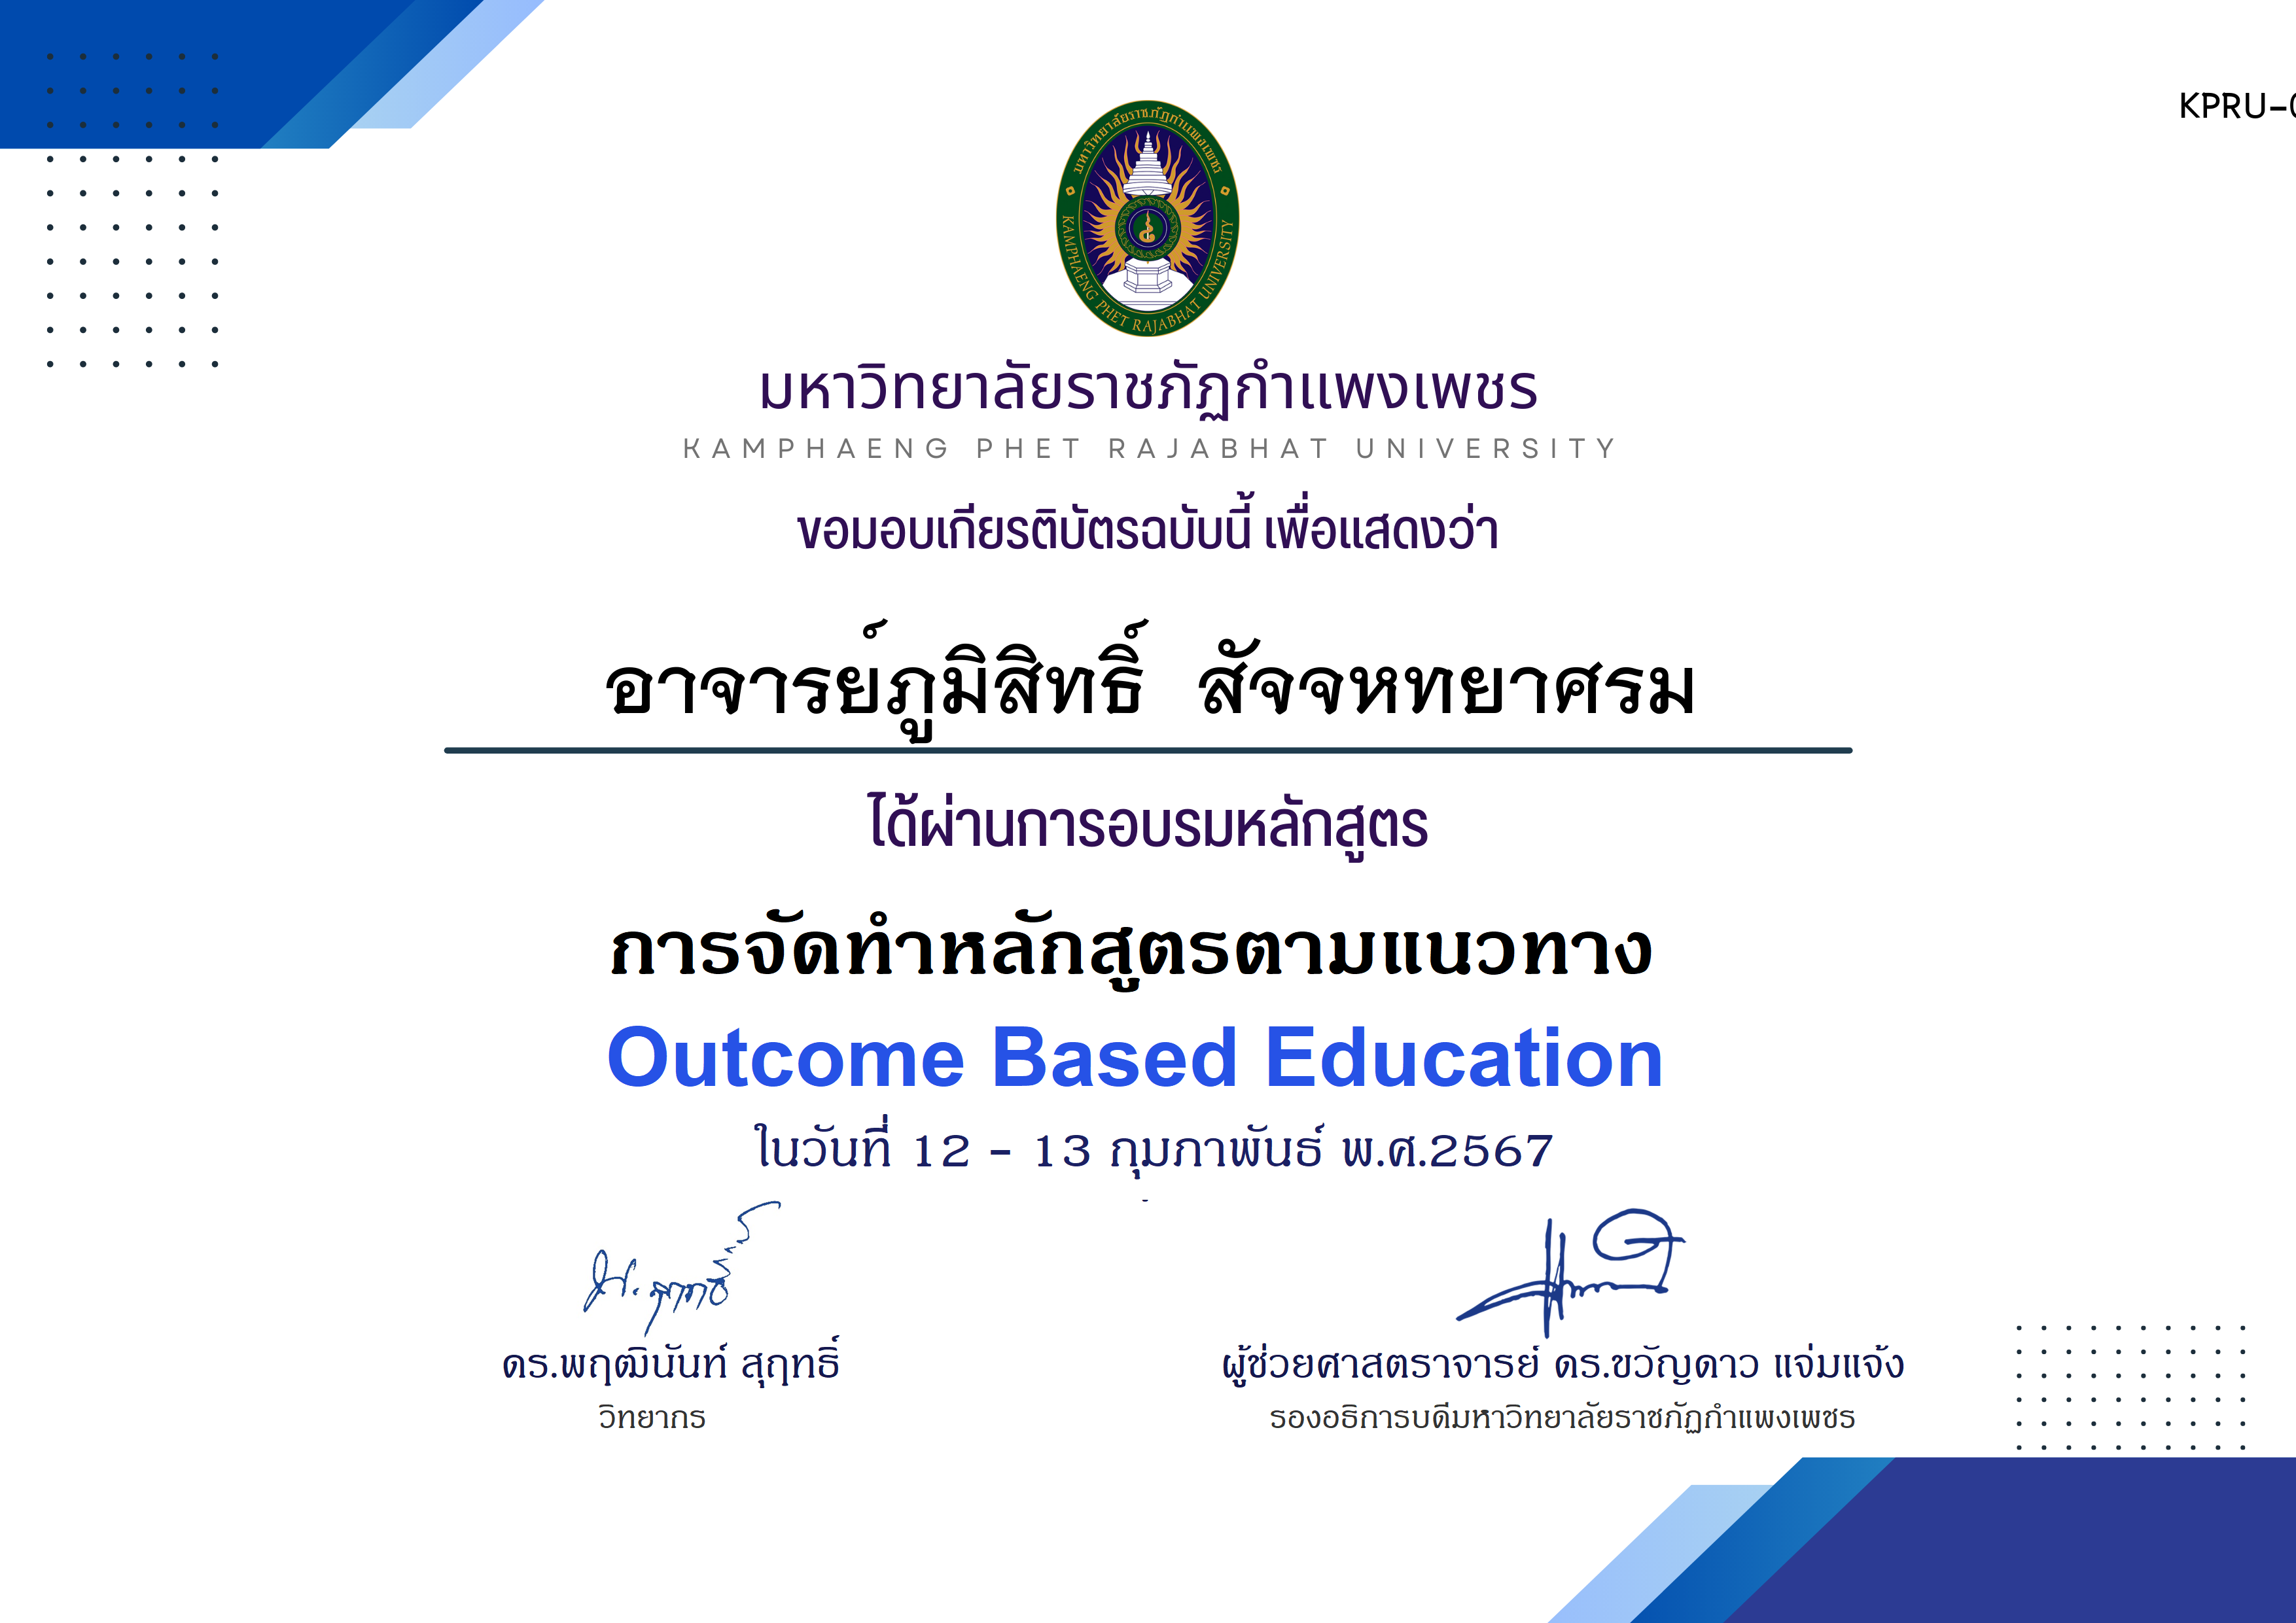 เกียรติบัตร โครงการอบรม การจัดทำหลักสูตรตามแนวทาง Outcome Based Education ของ อาจารย์ภูมิสิทธิ์  สัจจหทยาศรม